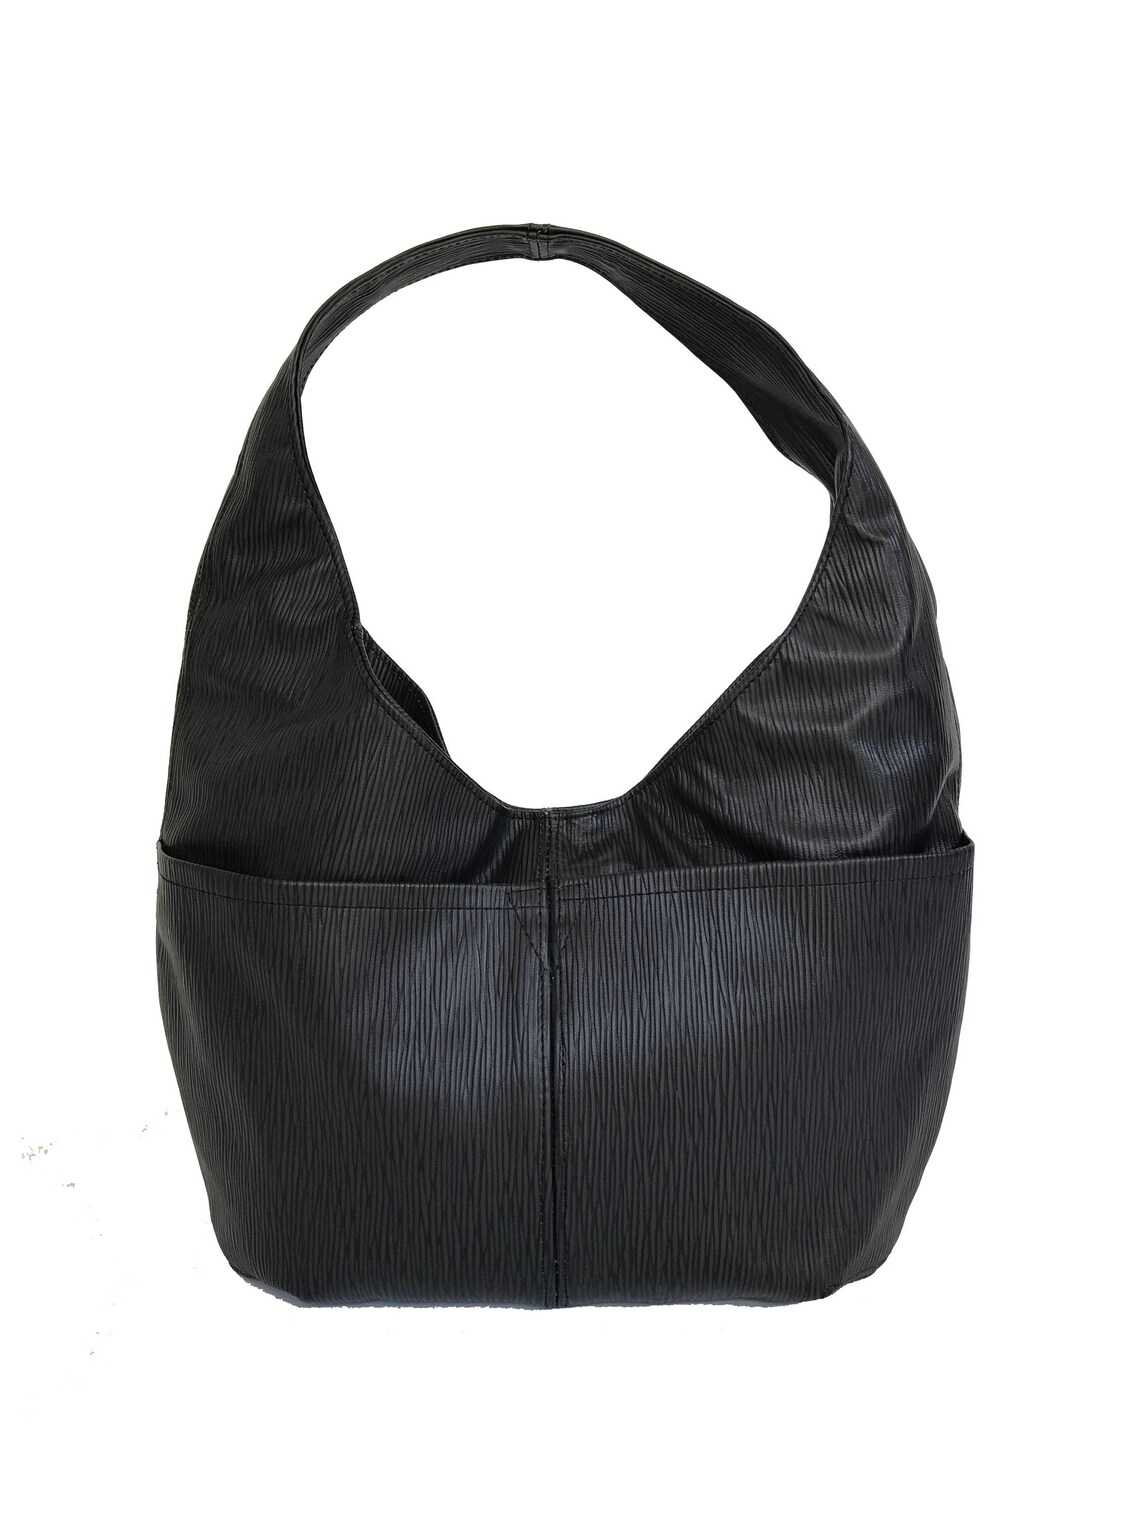 Black Leather Hobo Bag Hobo Purse Original Print Shoulder | Etsy